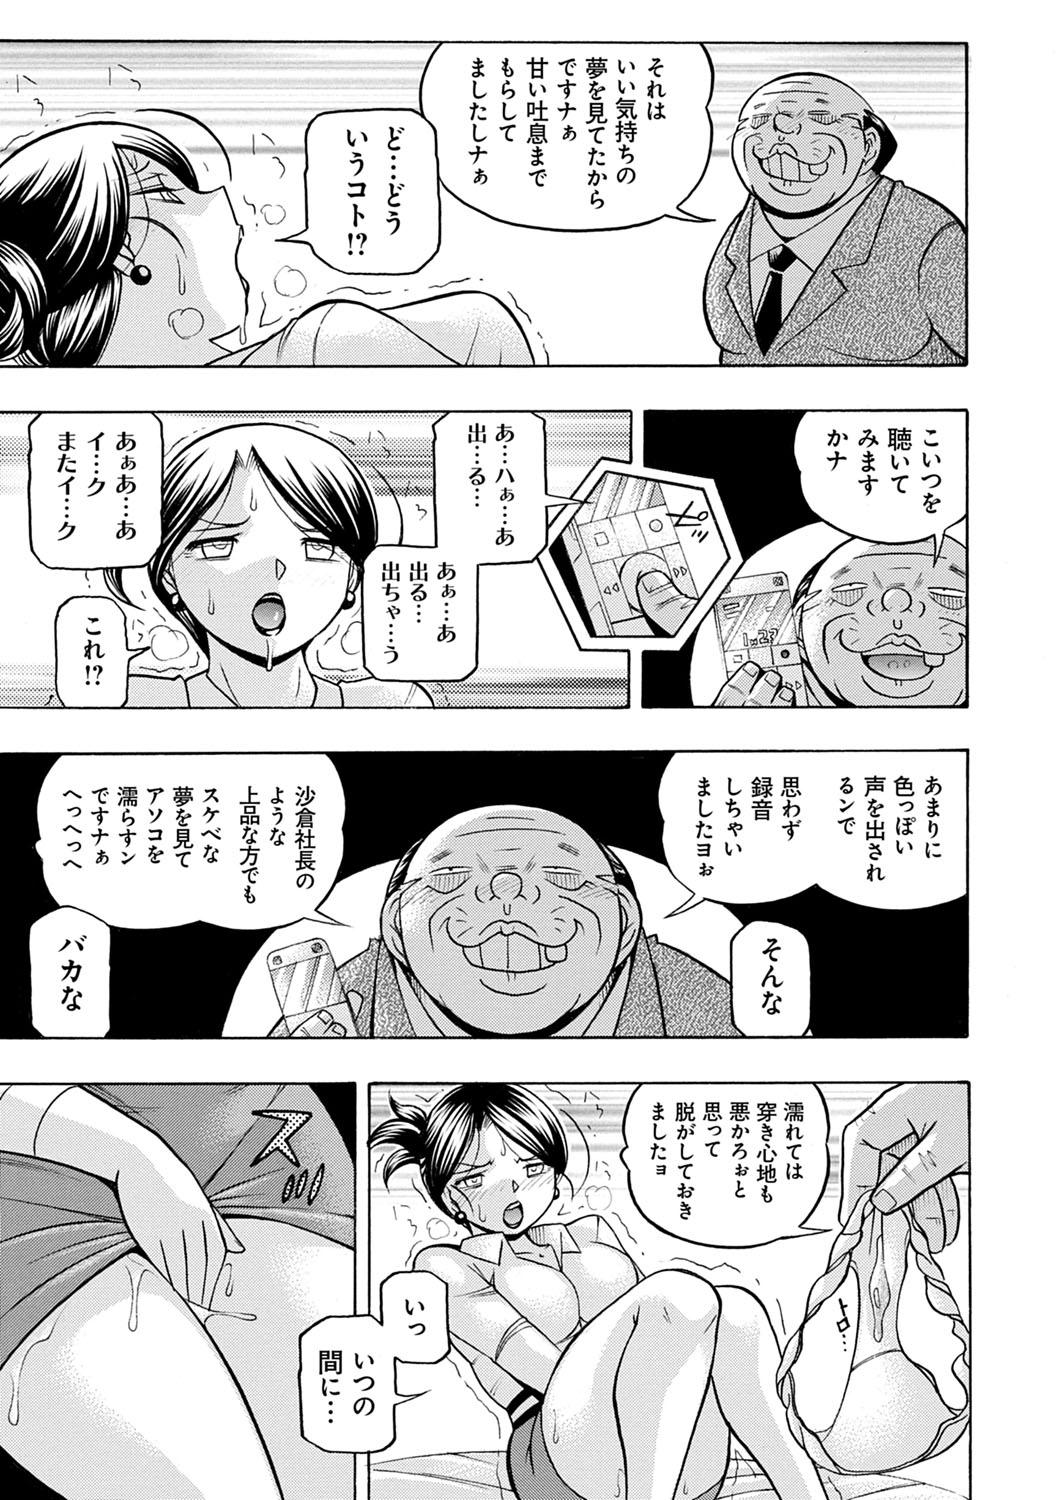 [Chuuka Naruto] Bijin Shachou Yuki ~Mitsuyaku no Nikusettai~ - YUKI of The Beautiful Chief Executive Officer ~The secret sweet treaty by sexual reception~ [Digital] 48